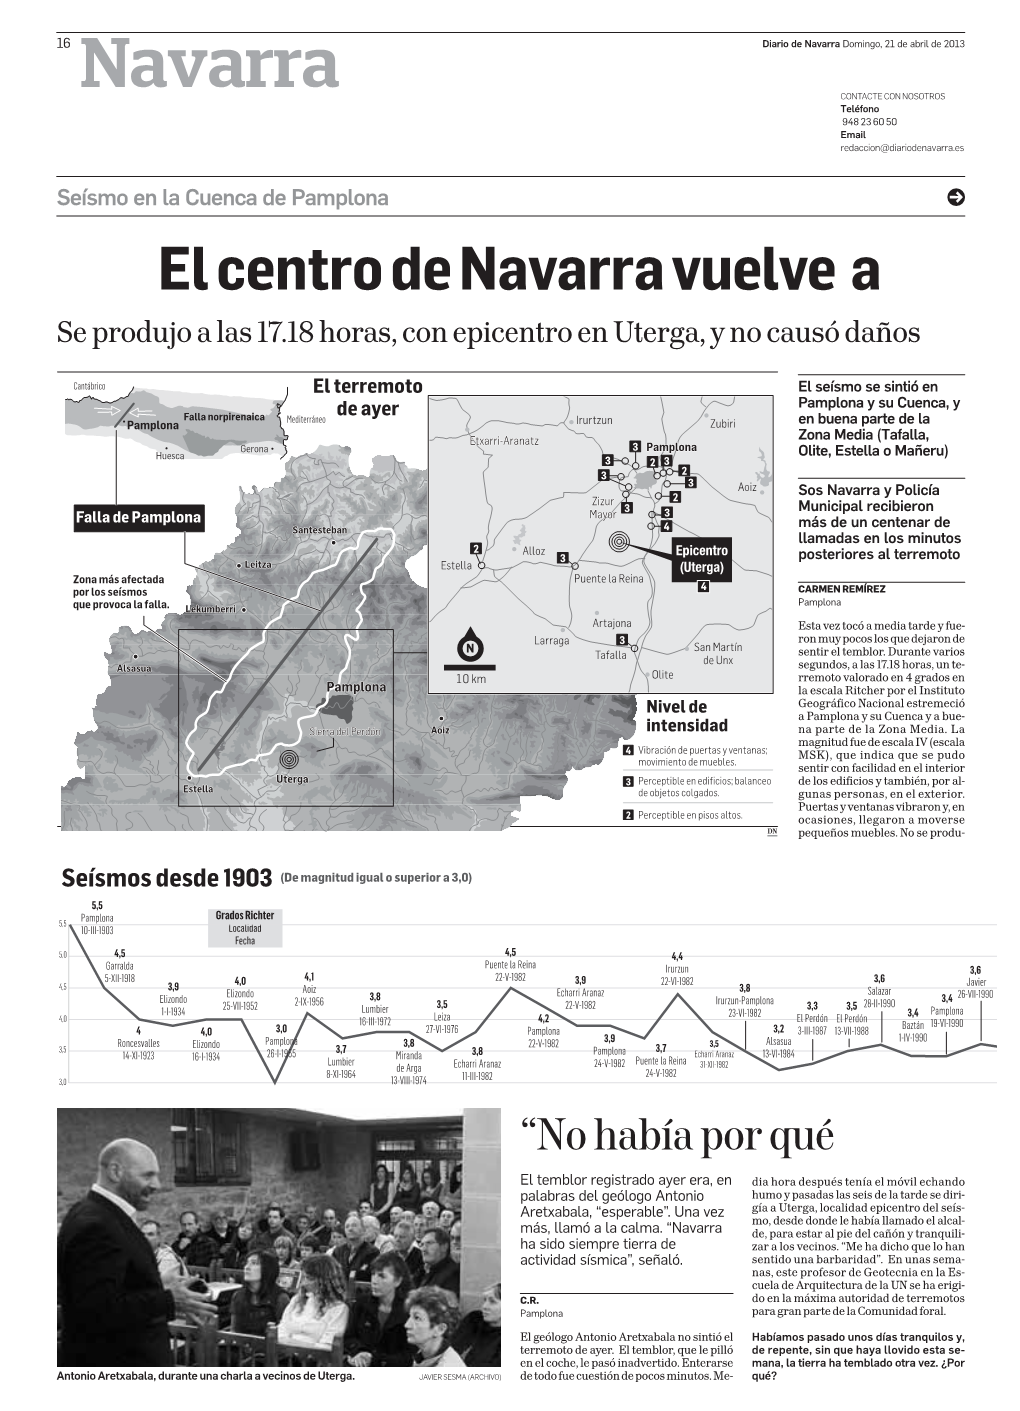 16 Navarra Diario De Navarra Domingo, 21 De Abril De 2013 CONTACTE CON NOSOTROS Teléfono 948236050 Email Redaccion@Diariodenavarra.Es